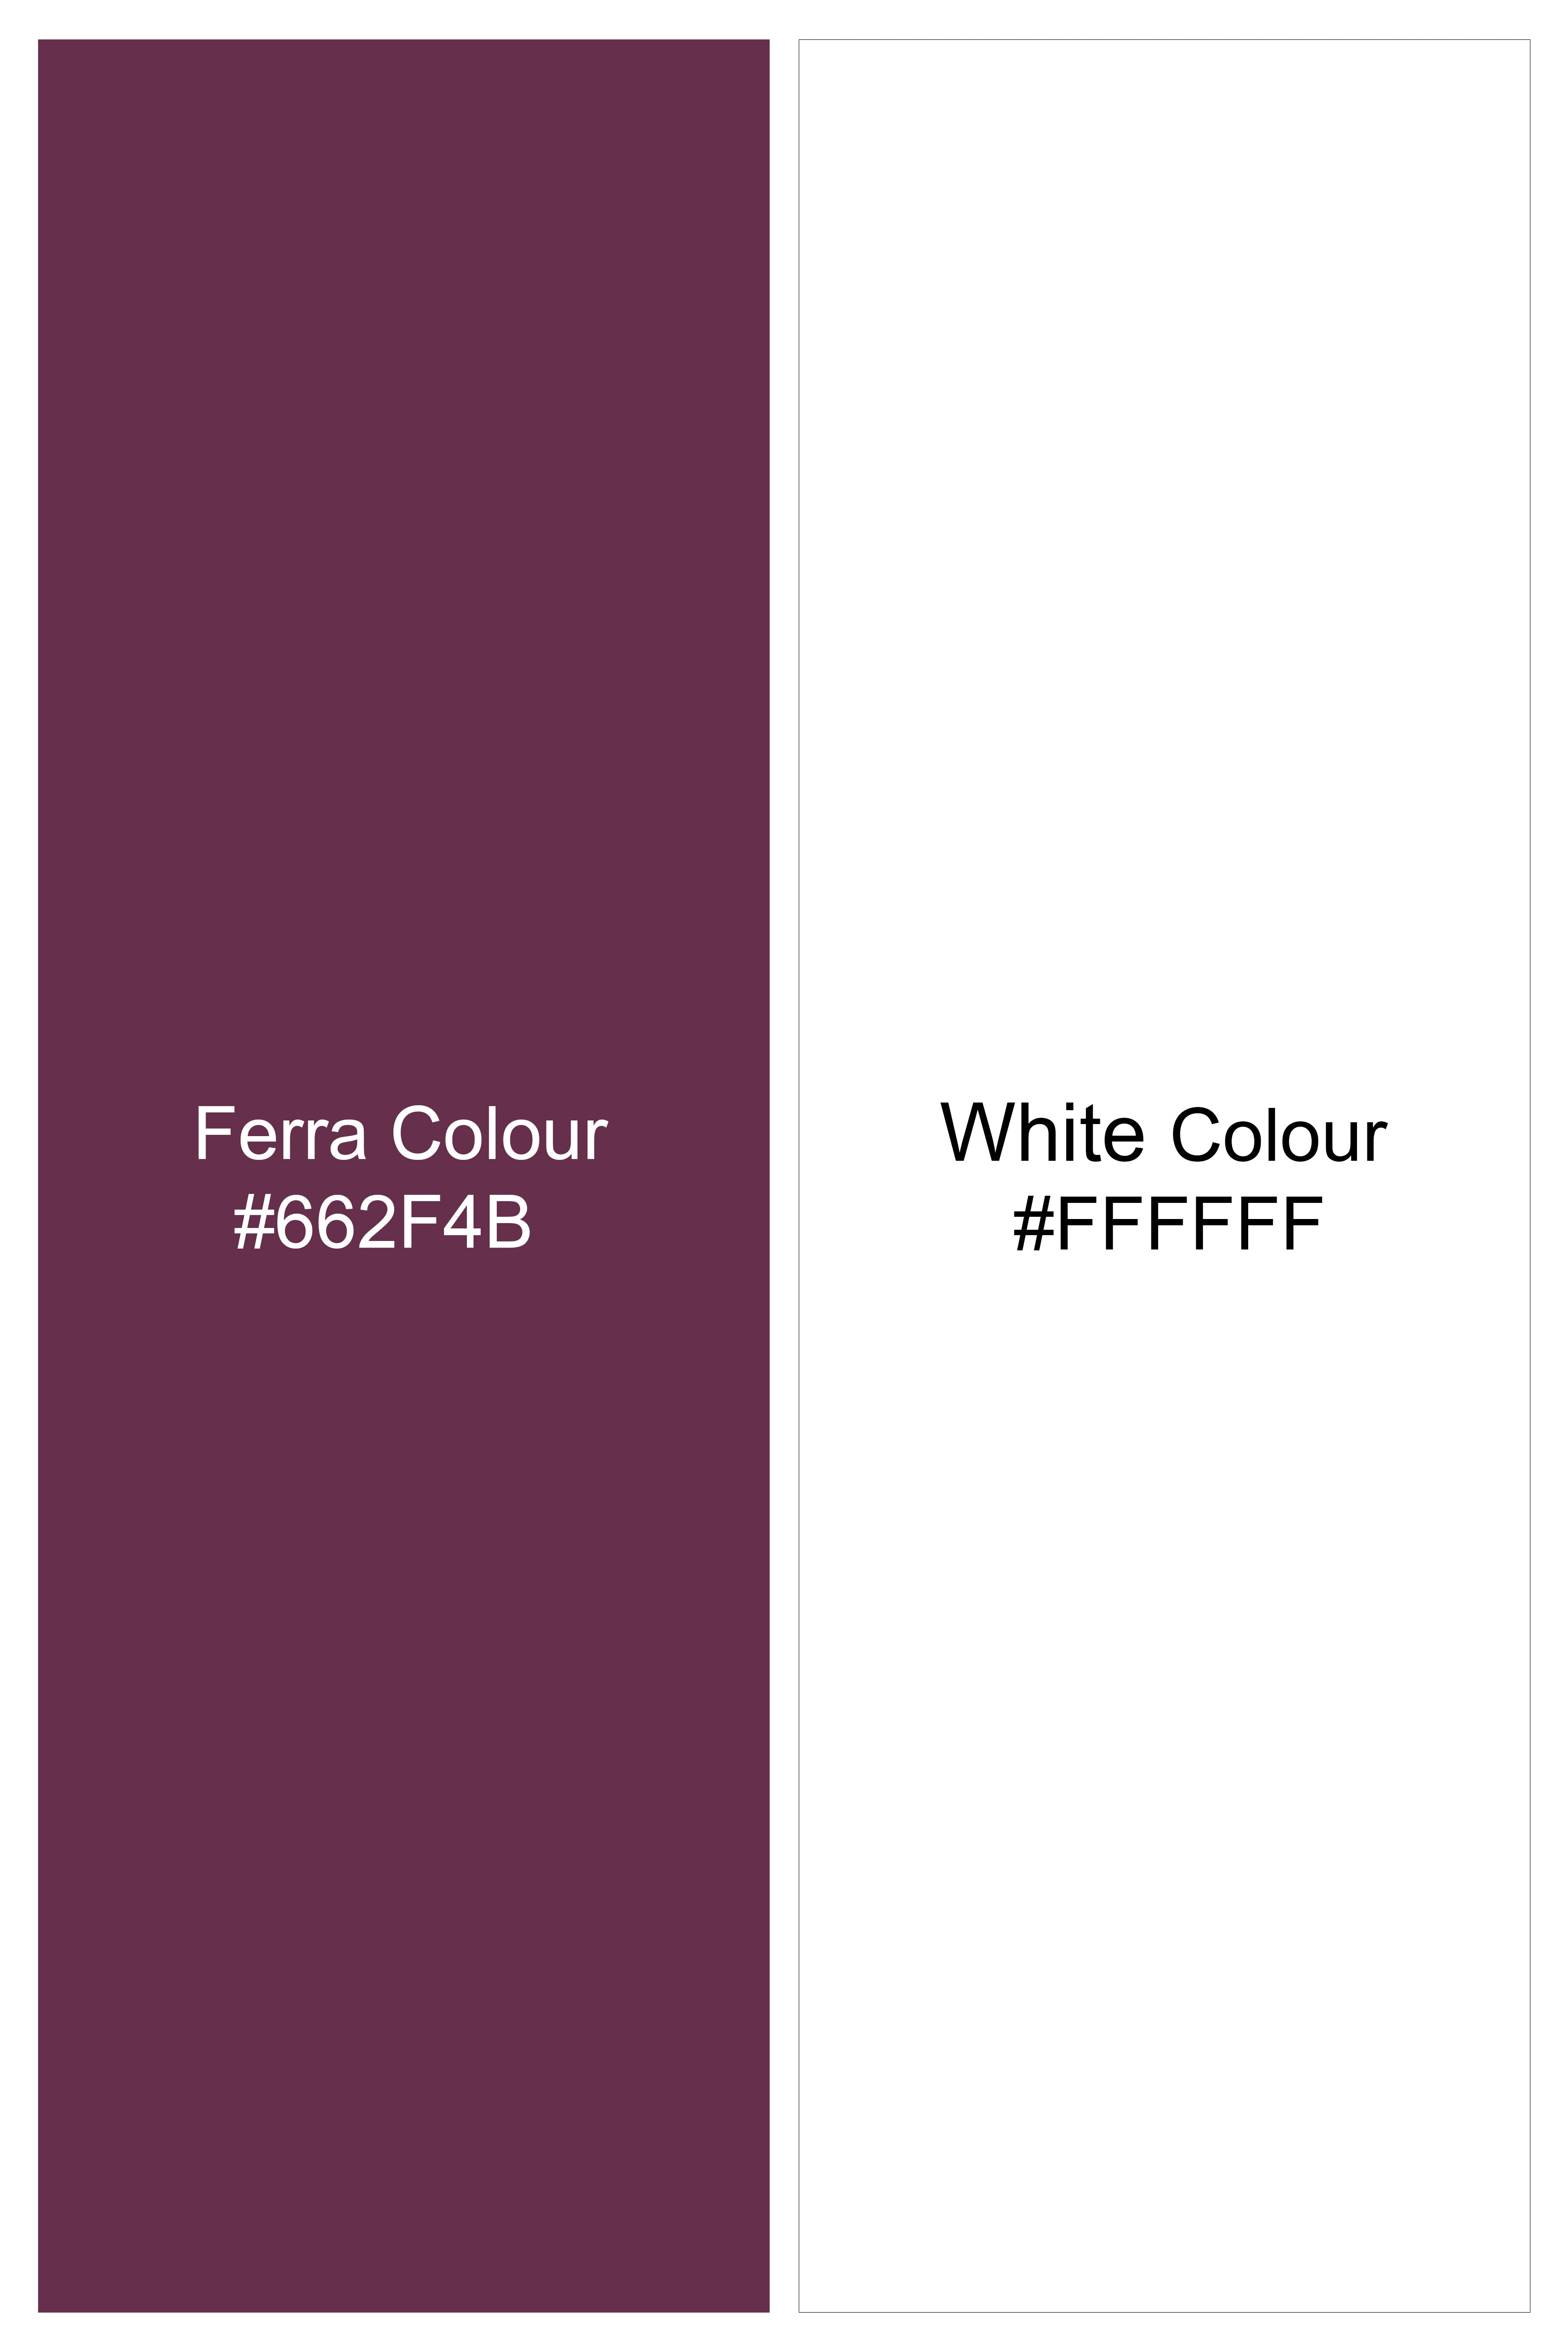 Ferra Wine Checkered Hand Painted Dobby Textured Premium Giza Cotton Shirt 6448-CA-ART-38, 6448-CA-ART-H-38, 6448-CA-ART-39, 6448-CA-ART-H-39, 6448-CA-ART-40, 6448-CA-ART-H-40, 6448-CA-ART-42, 6448-CA-ART-H-42, 6448-CA-ART-44, 6448-CA-ART-H-44, 6448-CA-ART-46, 6448-CA-ART-H-46, 6448-CA-ART-48, 6448-CA-ART-H-48, 6448-CA-ART-50, 6448-CA-ART-H-50, 6448-CA-ART-52, 6448-CA-ART-H-52